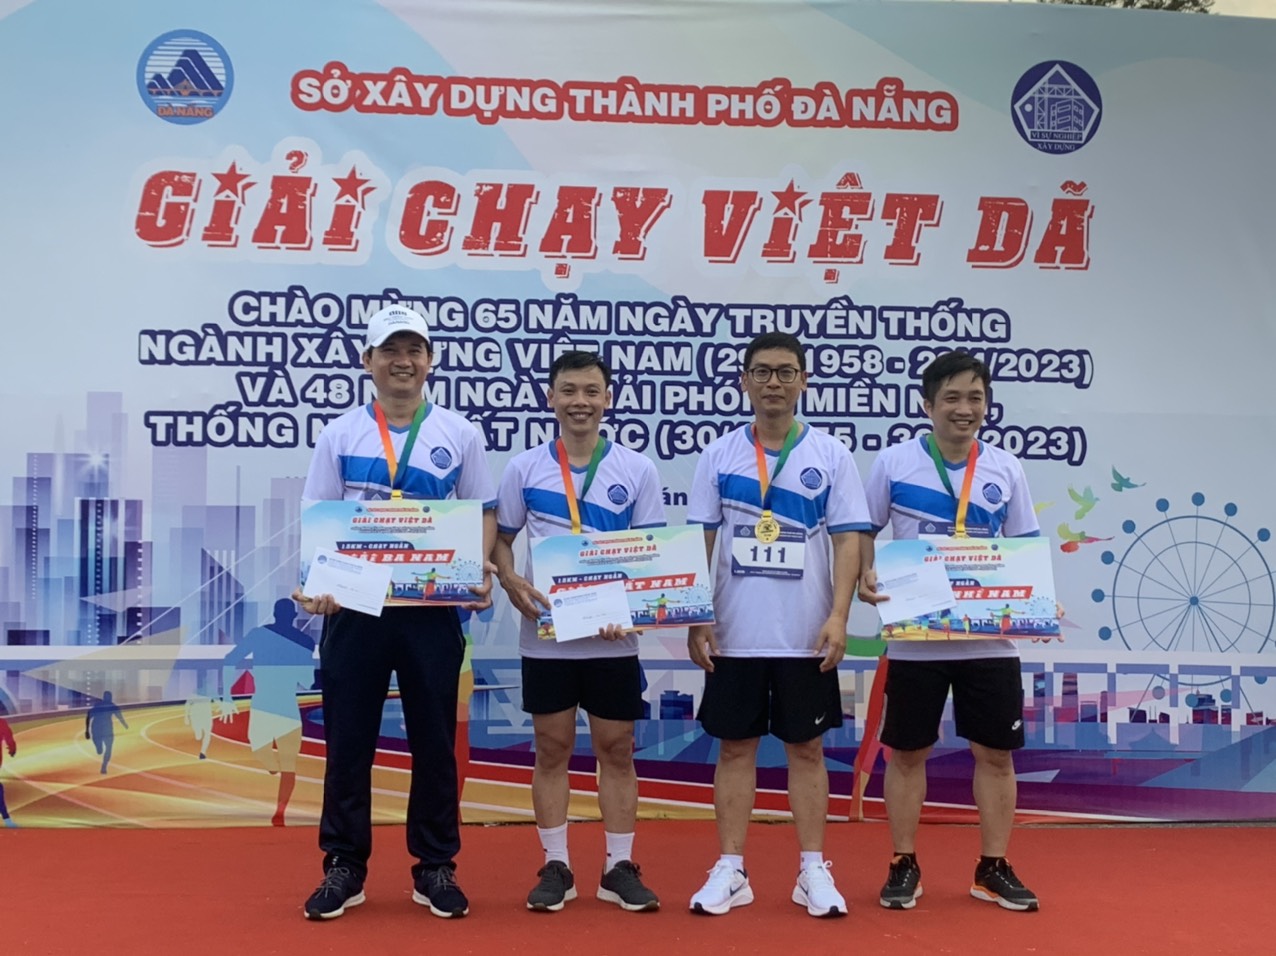 Ông Trần Văn Nam - Giám đốc Trung tâm (ngoài cùng bên trái) nhận giải Ba cự ly 1,5 km